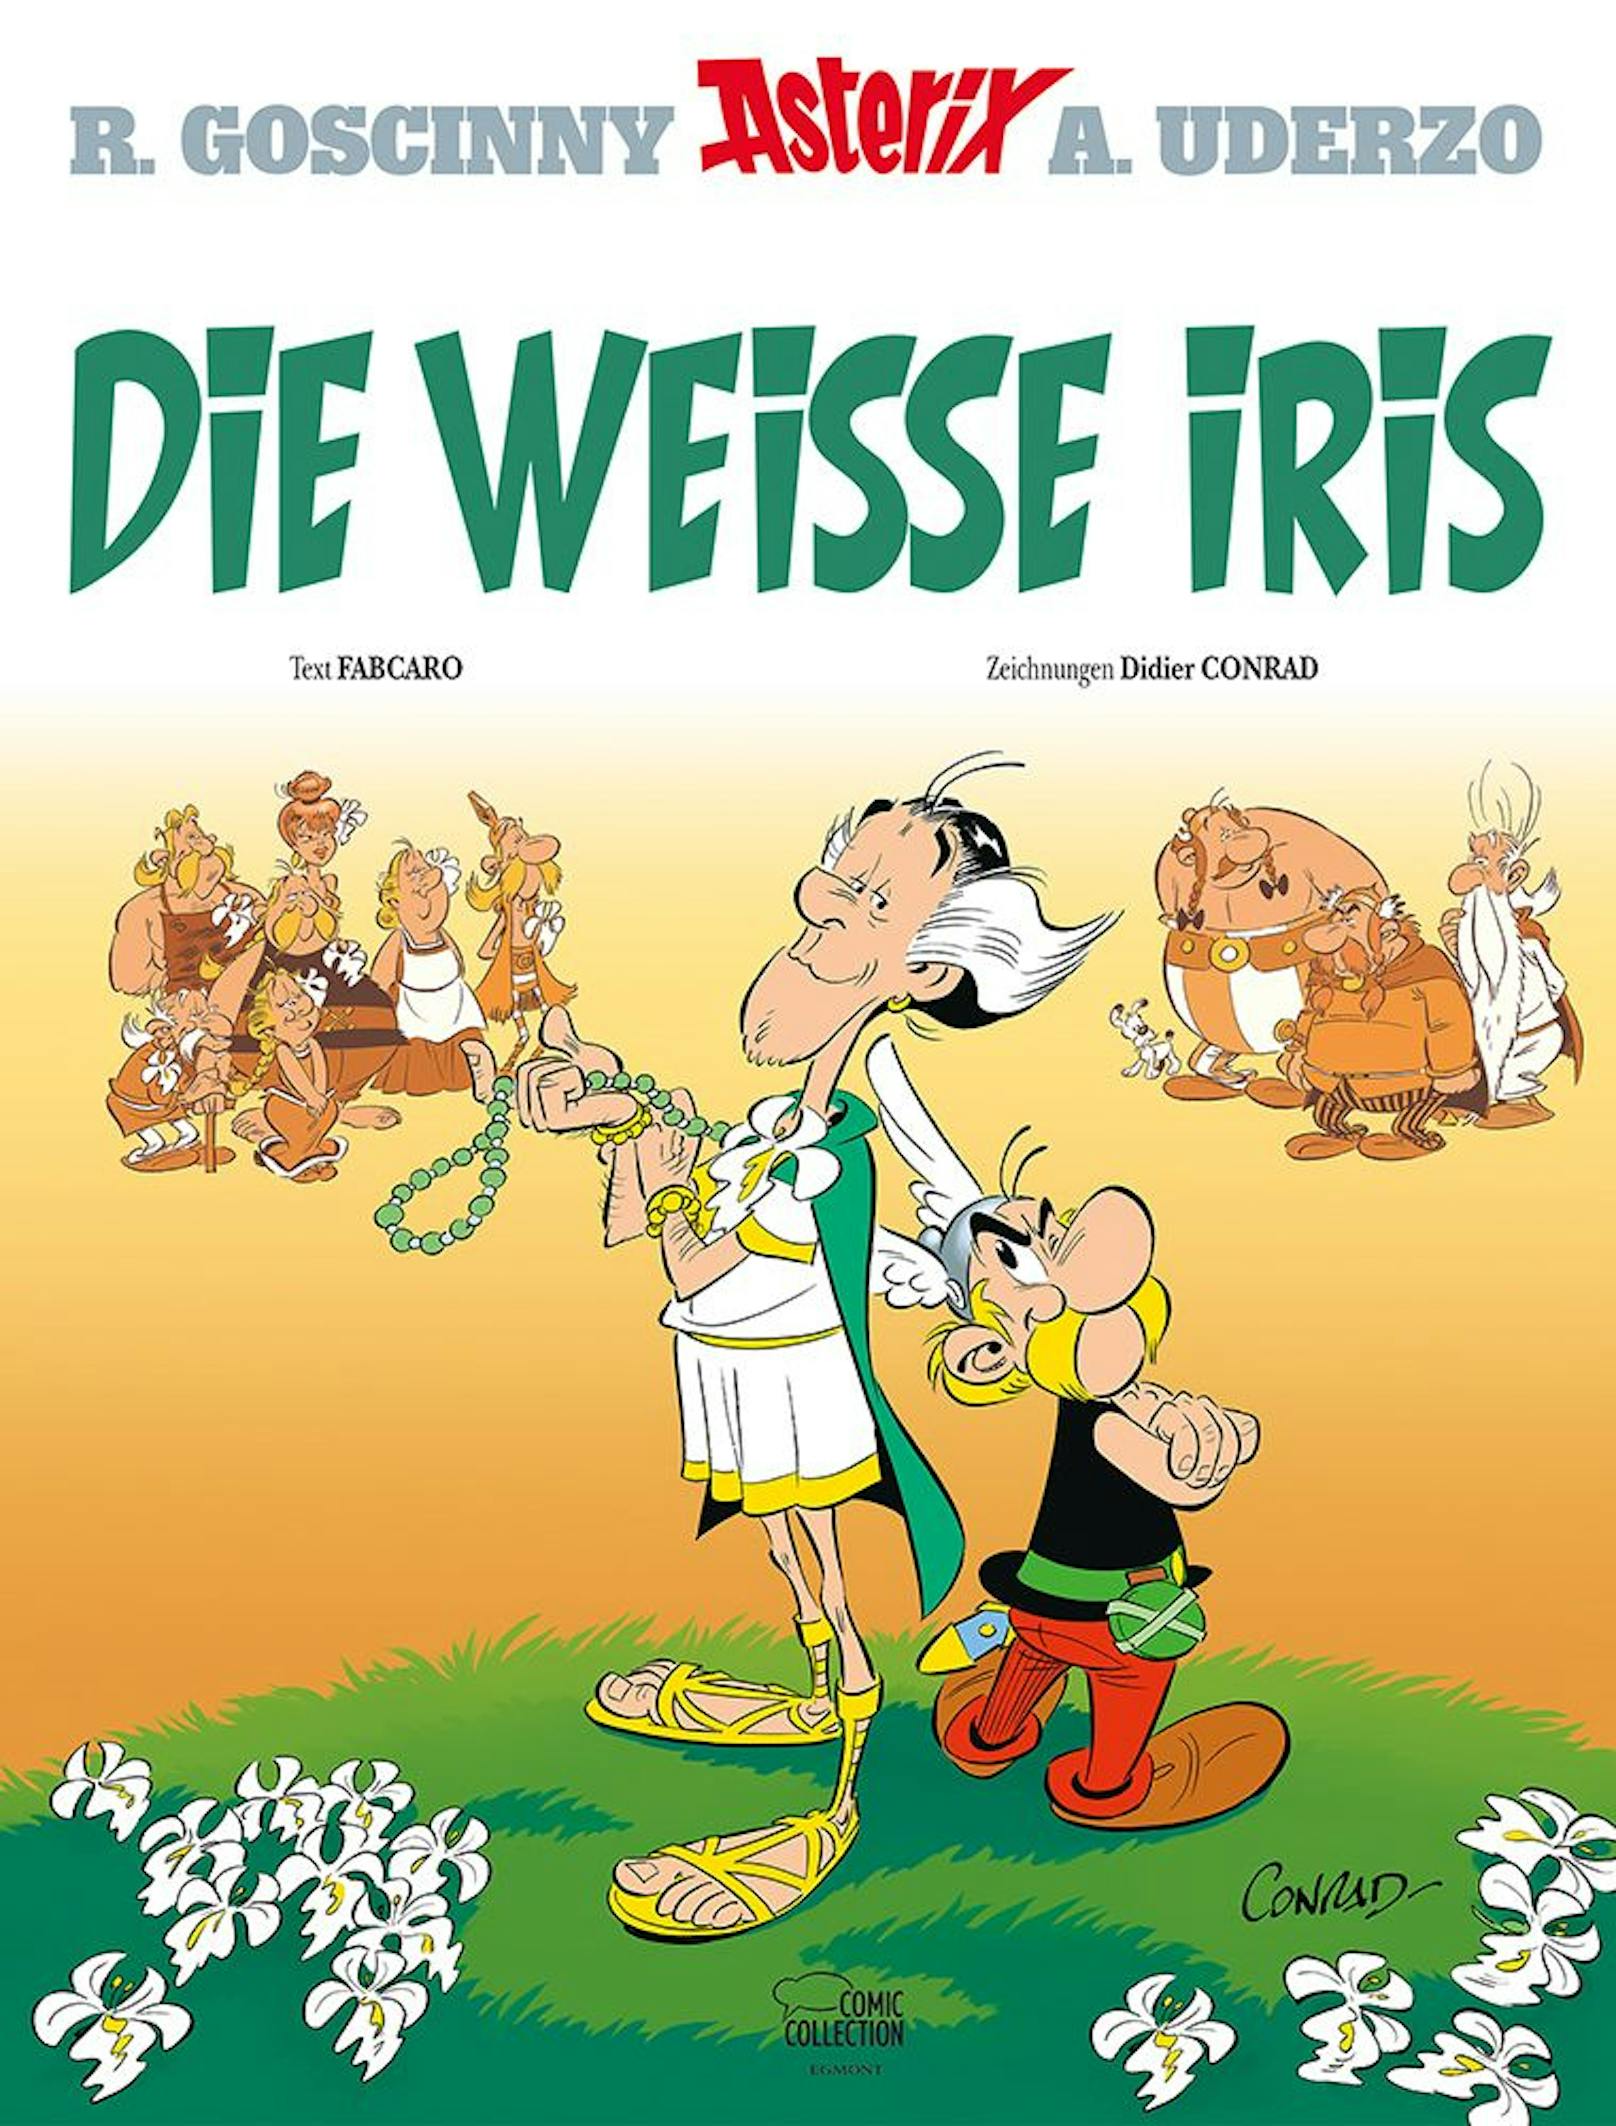 "Die Blüte einer einzigen Iris erleuchtet den Wald" heißt es im neuen Album ab dem 26. Oktober, in dem das 40. Abenteuer von Asterix und Obelix erzählt wird.